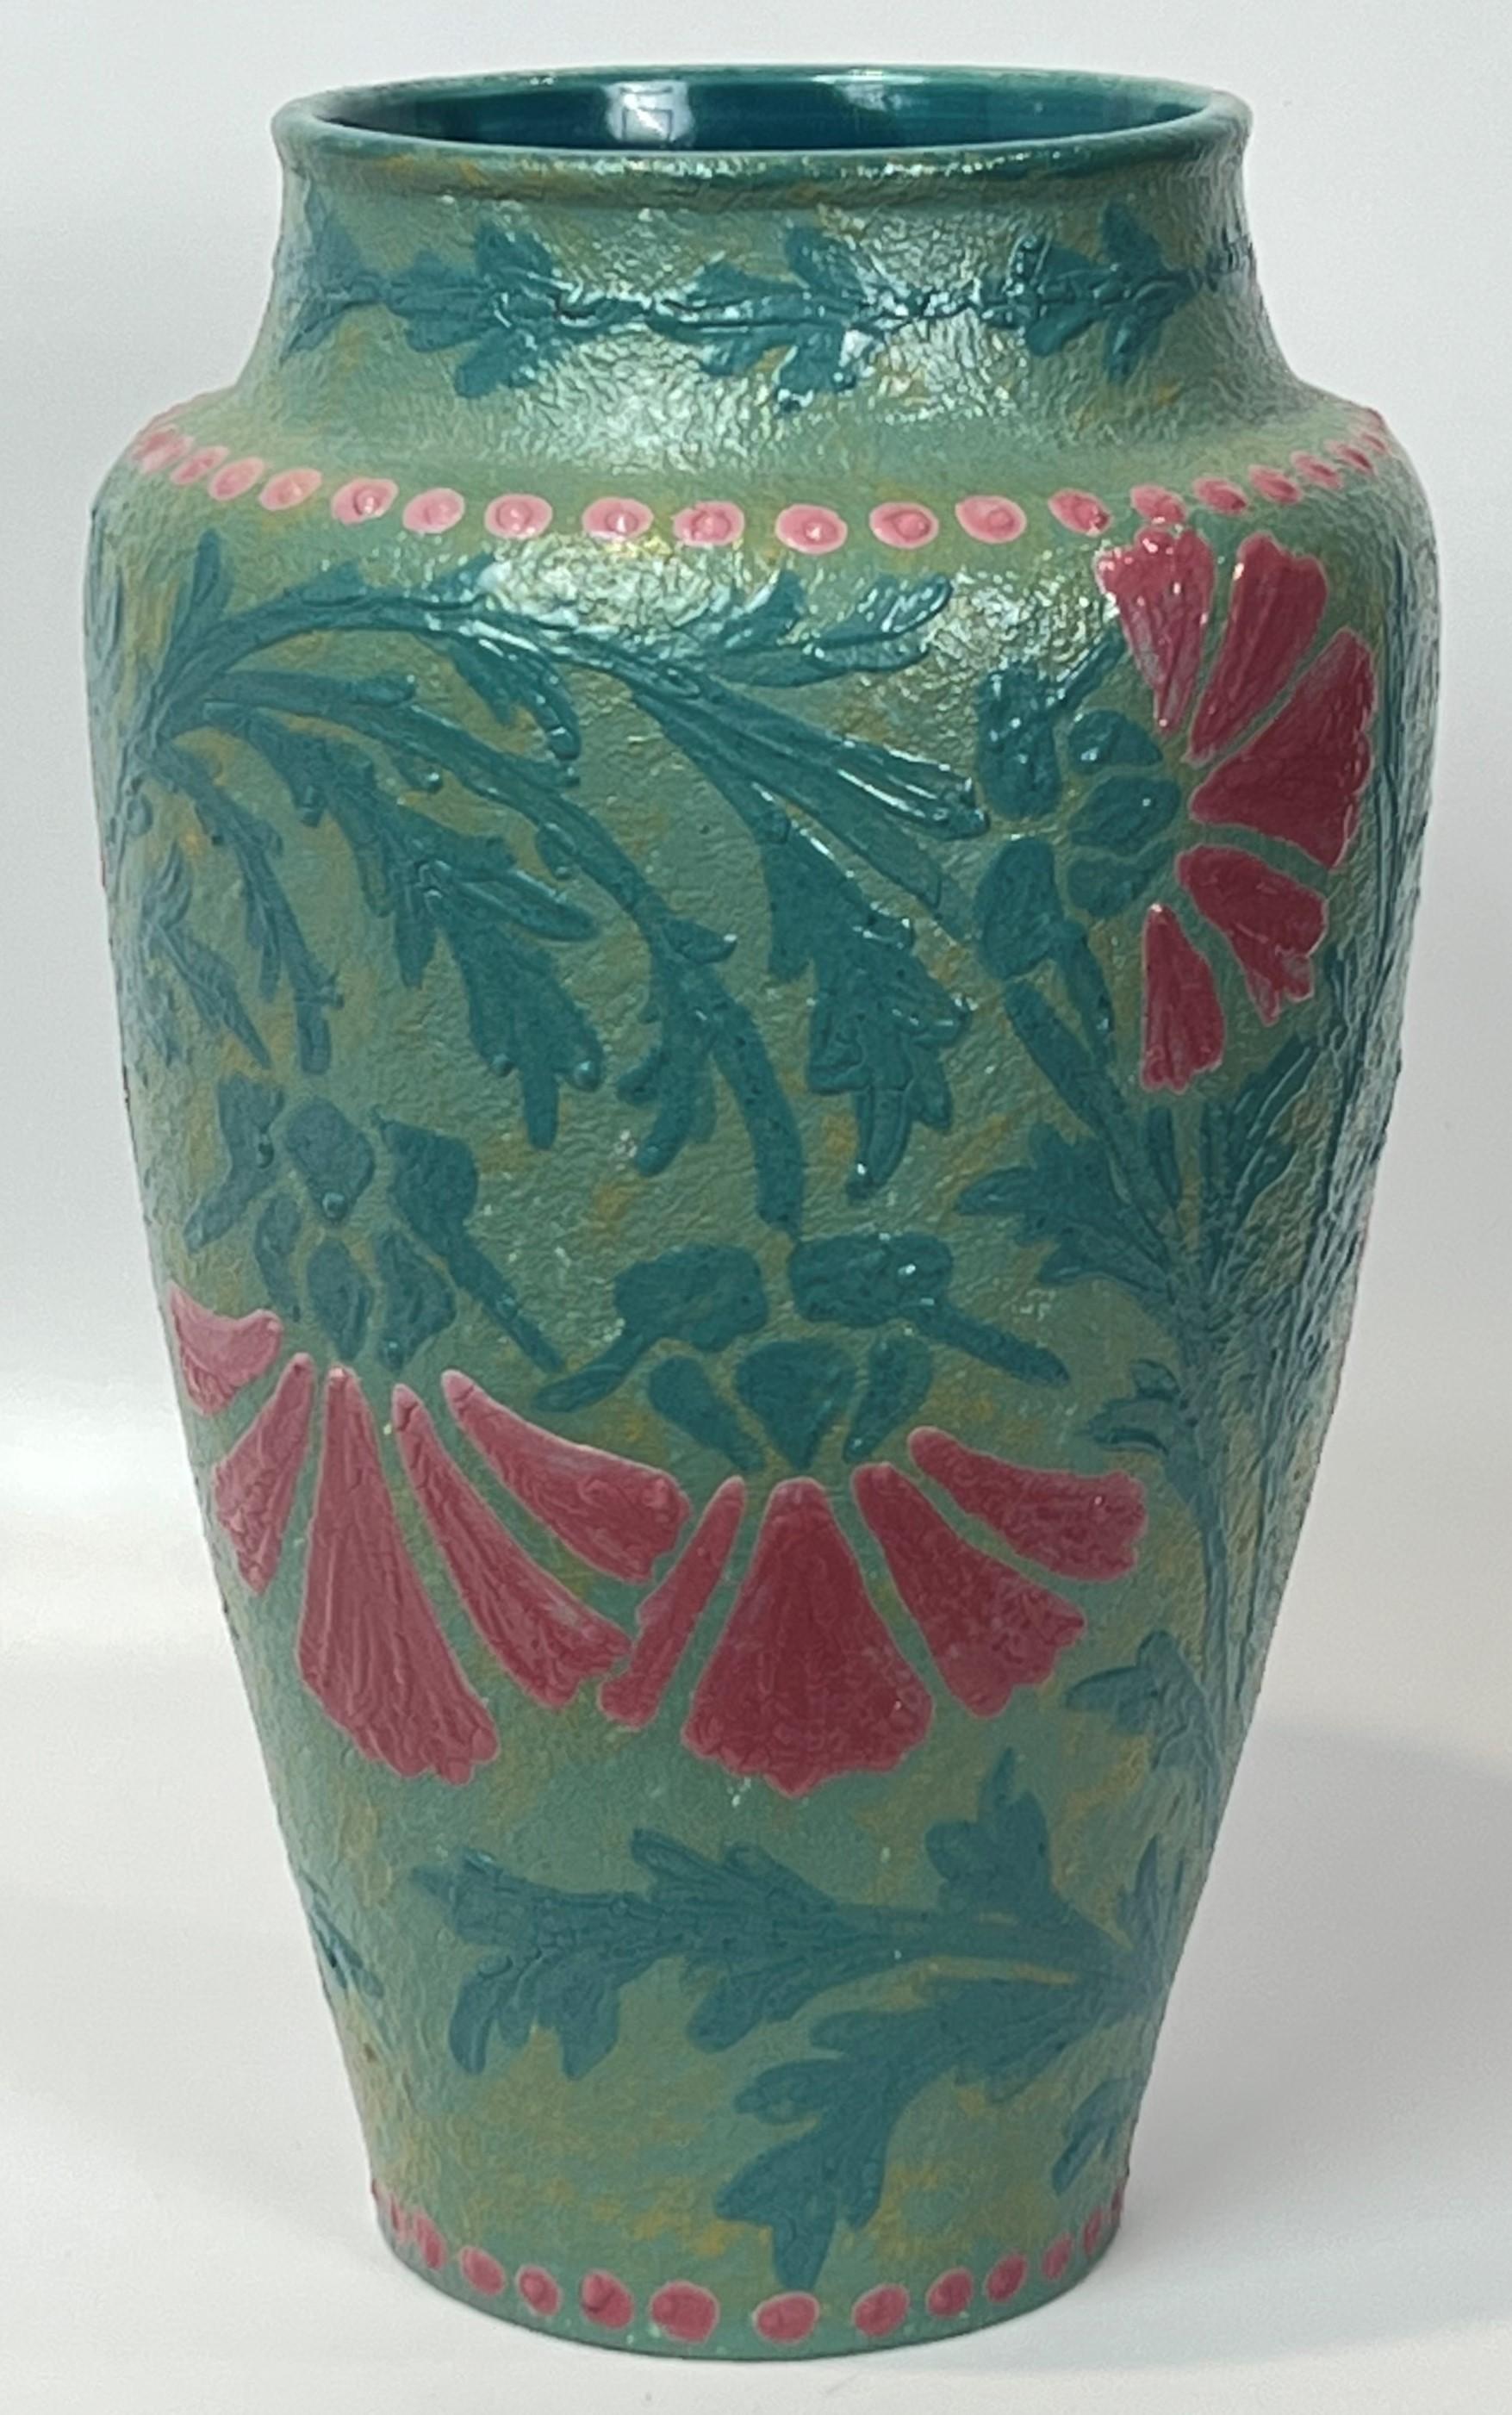 Jugendstil Joseph Ekberg Art Nouveau Vase 1908 Conventionalized Floral Gustavsberg